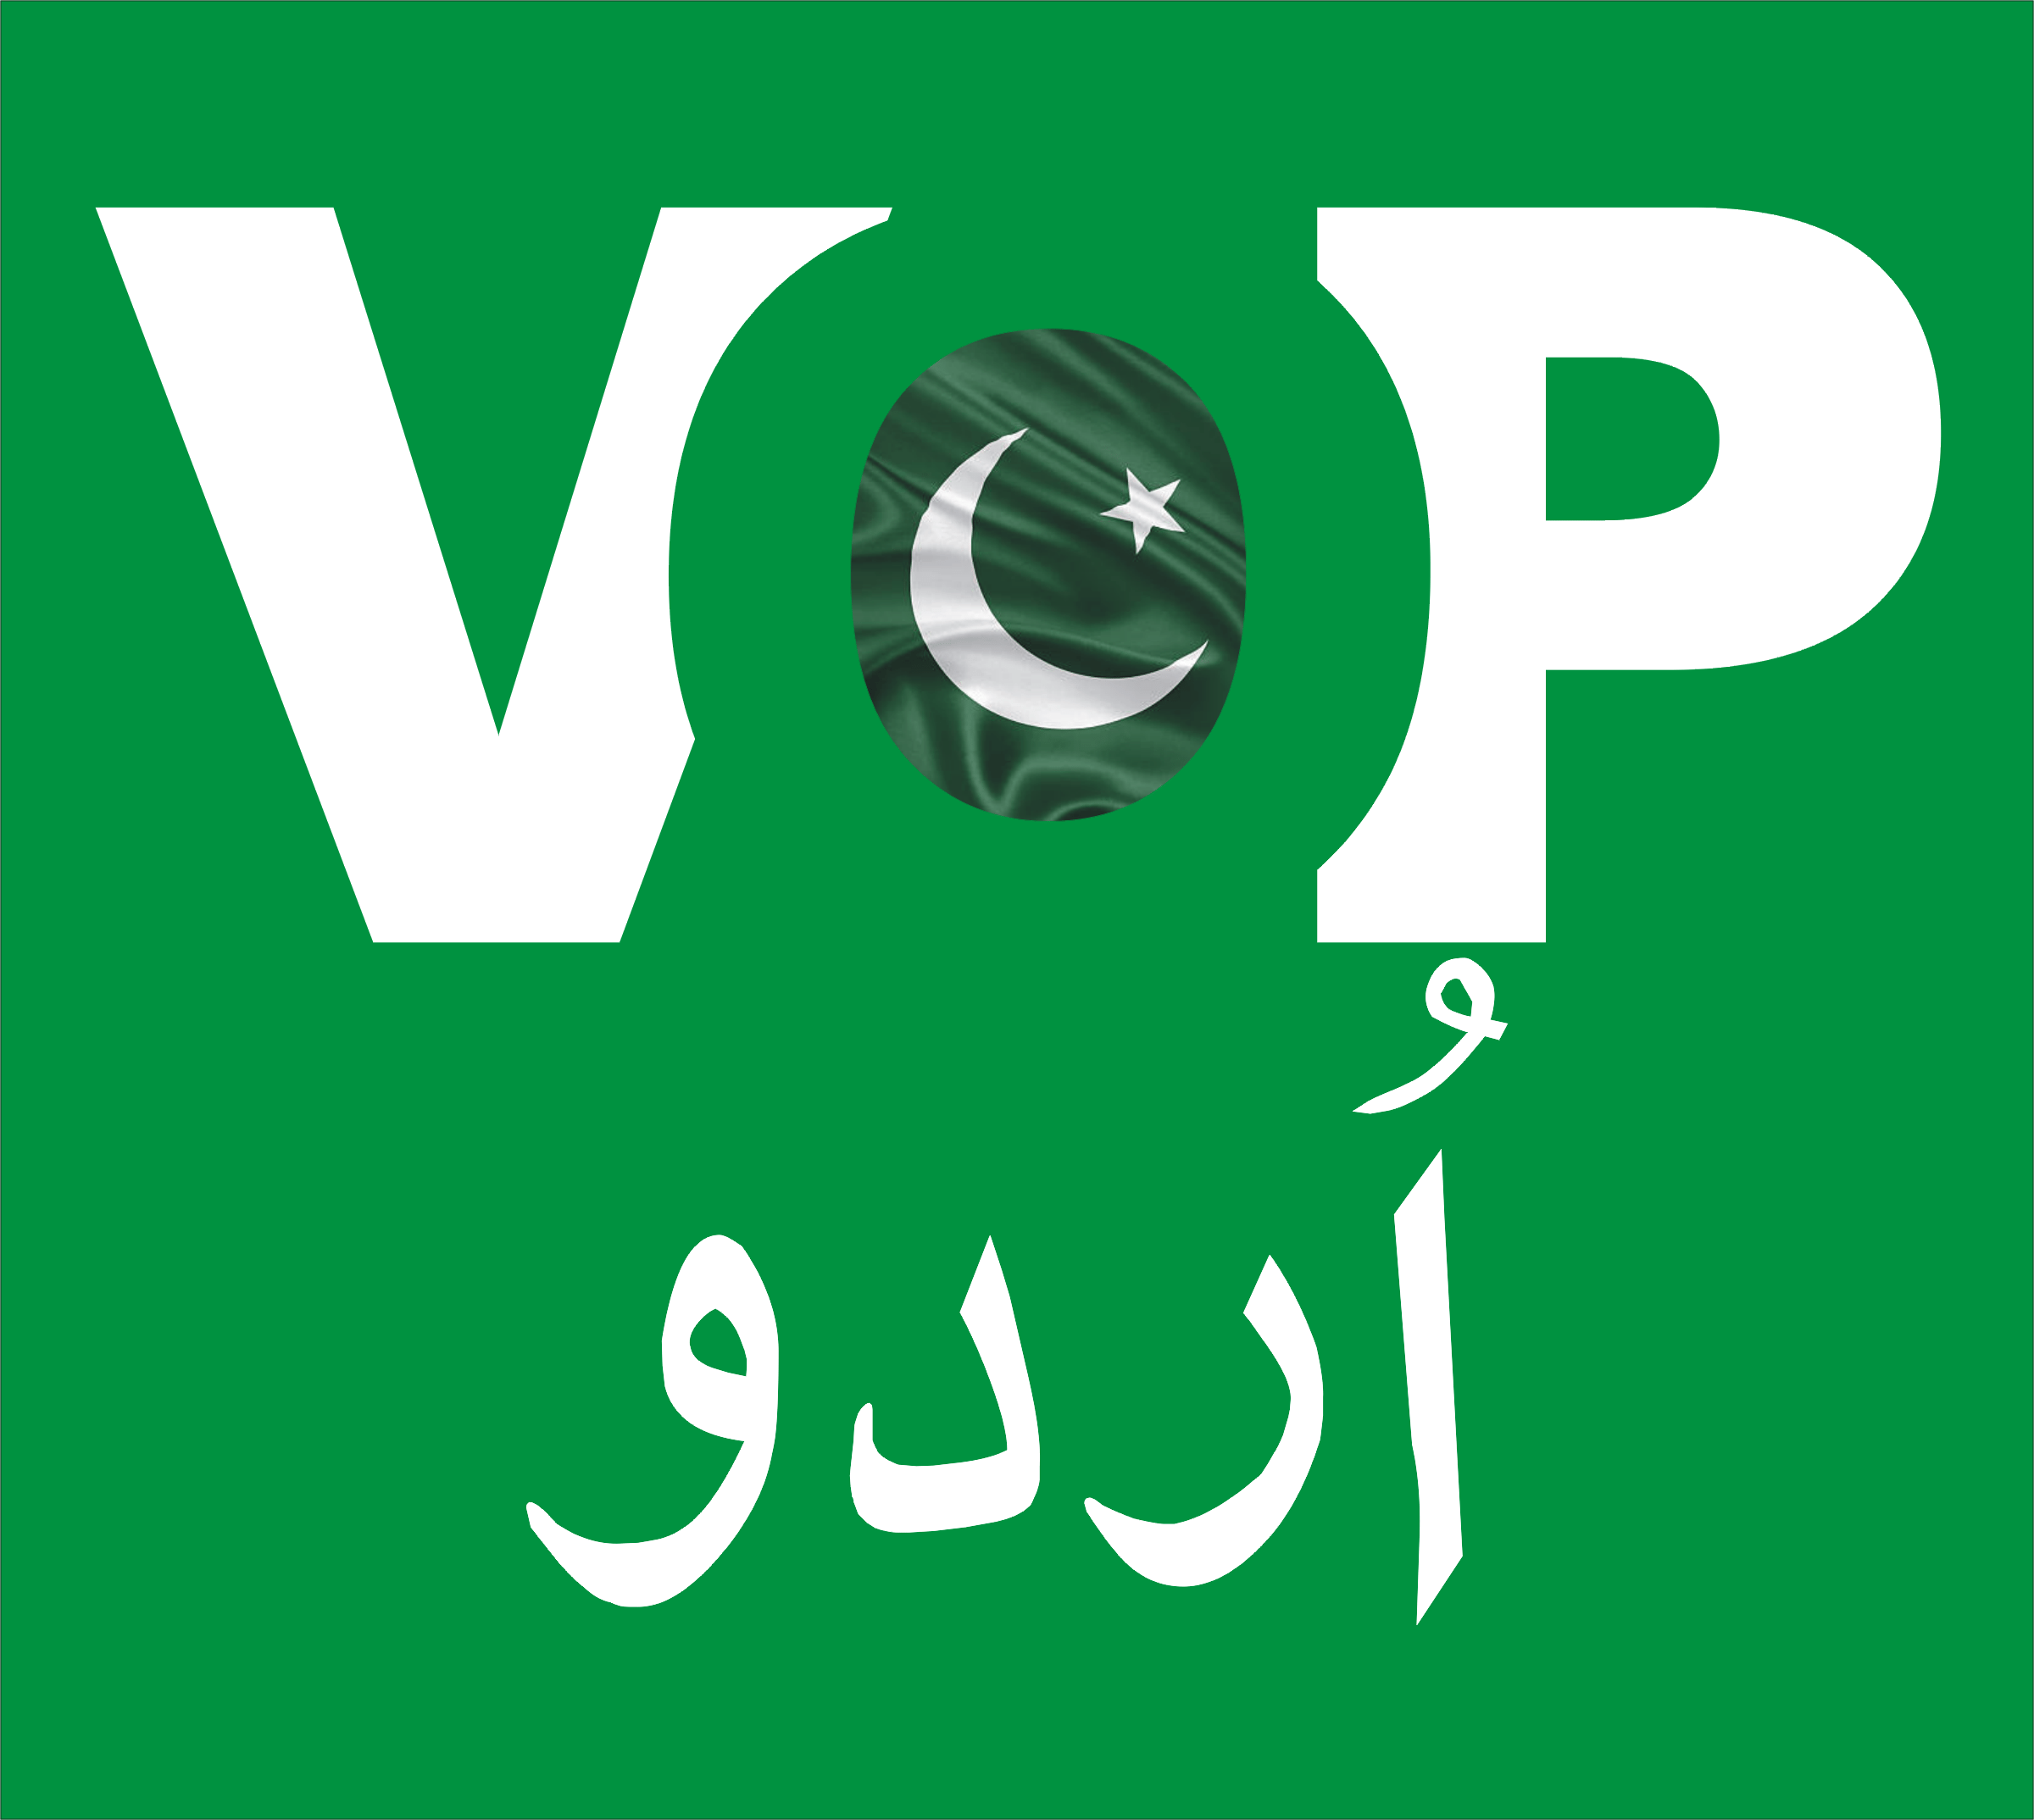 VOP Urdu